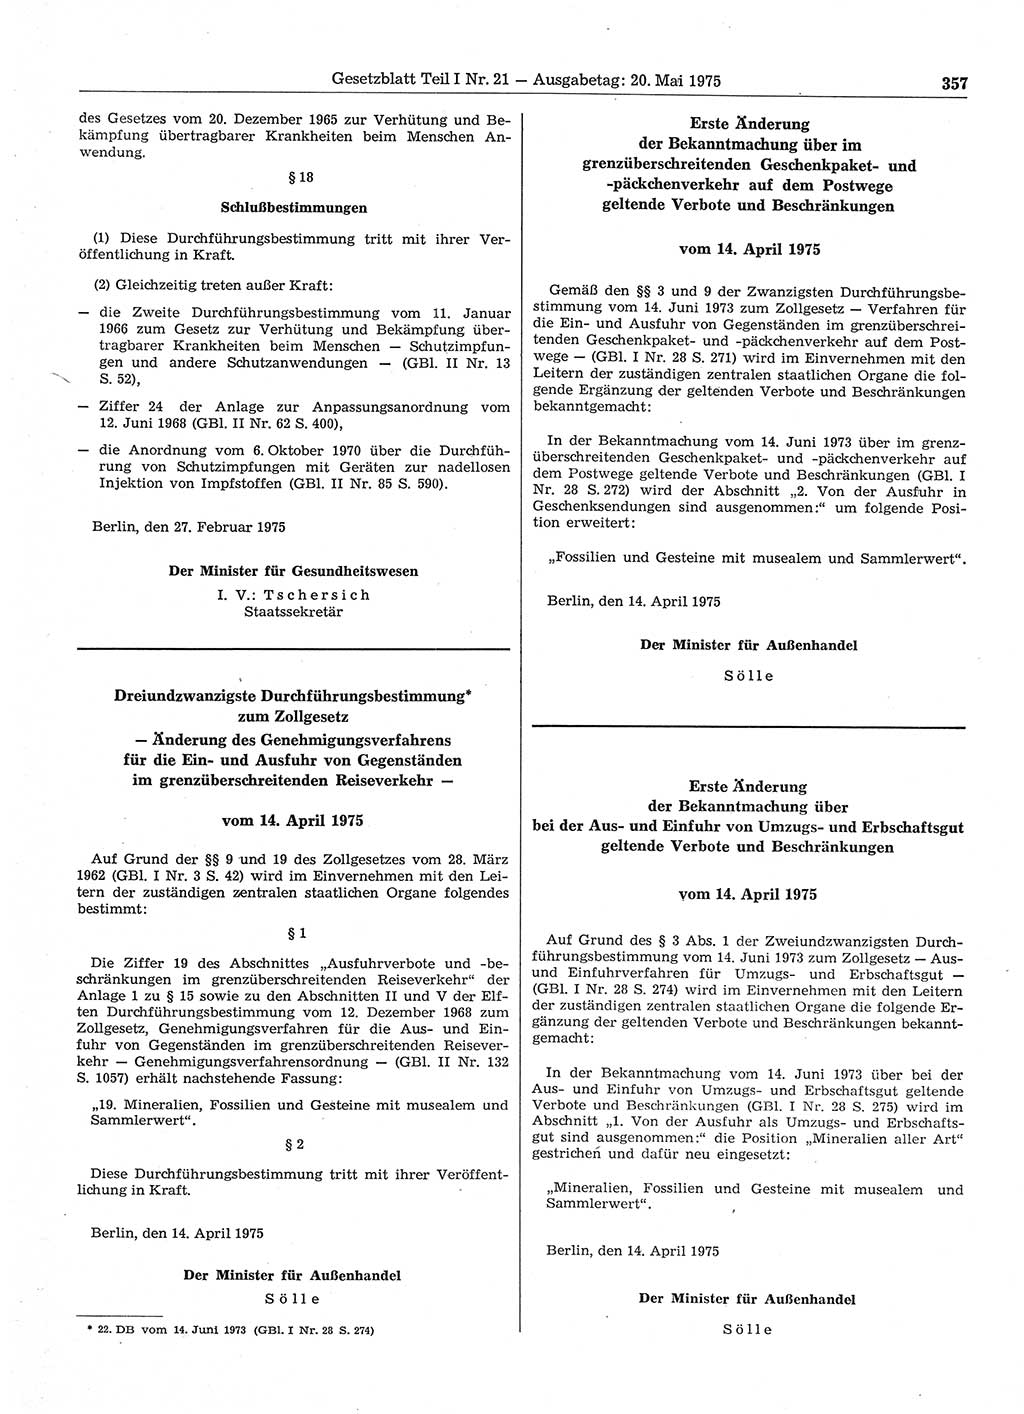 Gesetzblatt (GBl.) der Deutschen Demokratischen Republik (DDR) Teil Ⅰ 1975, Seite 357 (GBl. DDR Ⅰ 1975, S. 357)